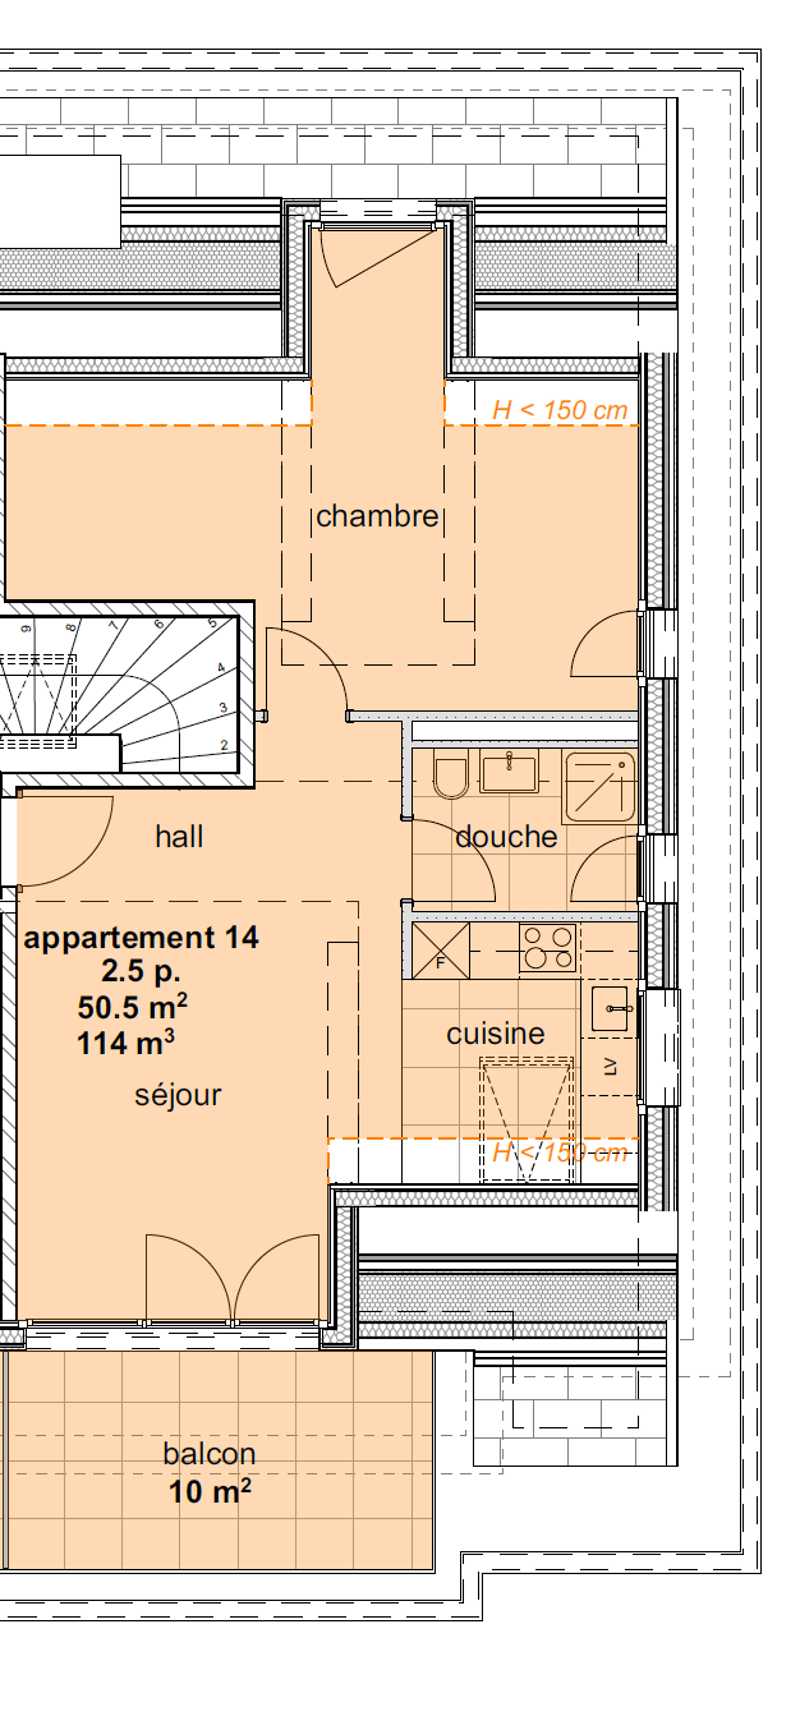 Appartements neufs de 1.5 pièces aux combles (3ème étage) - (Sud) (2)